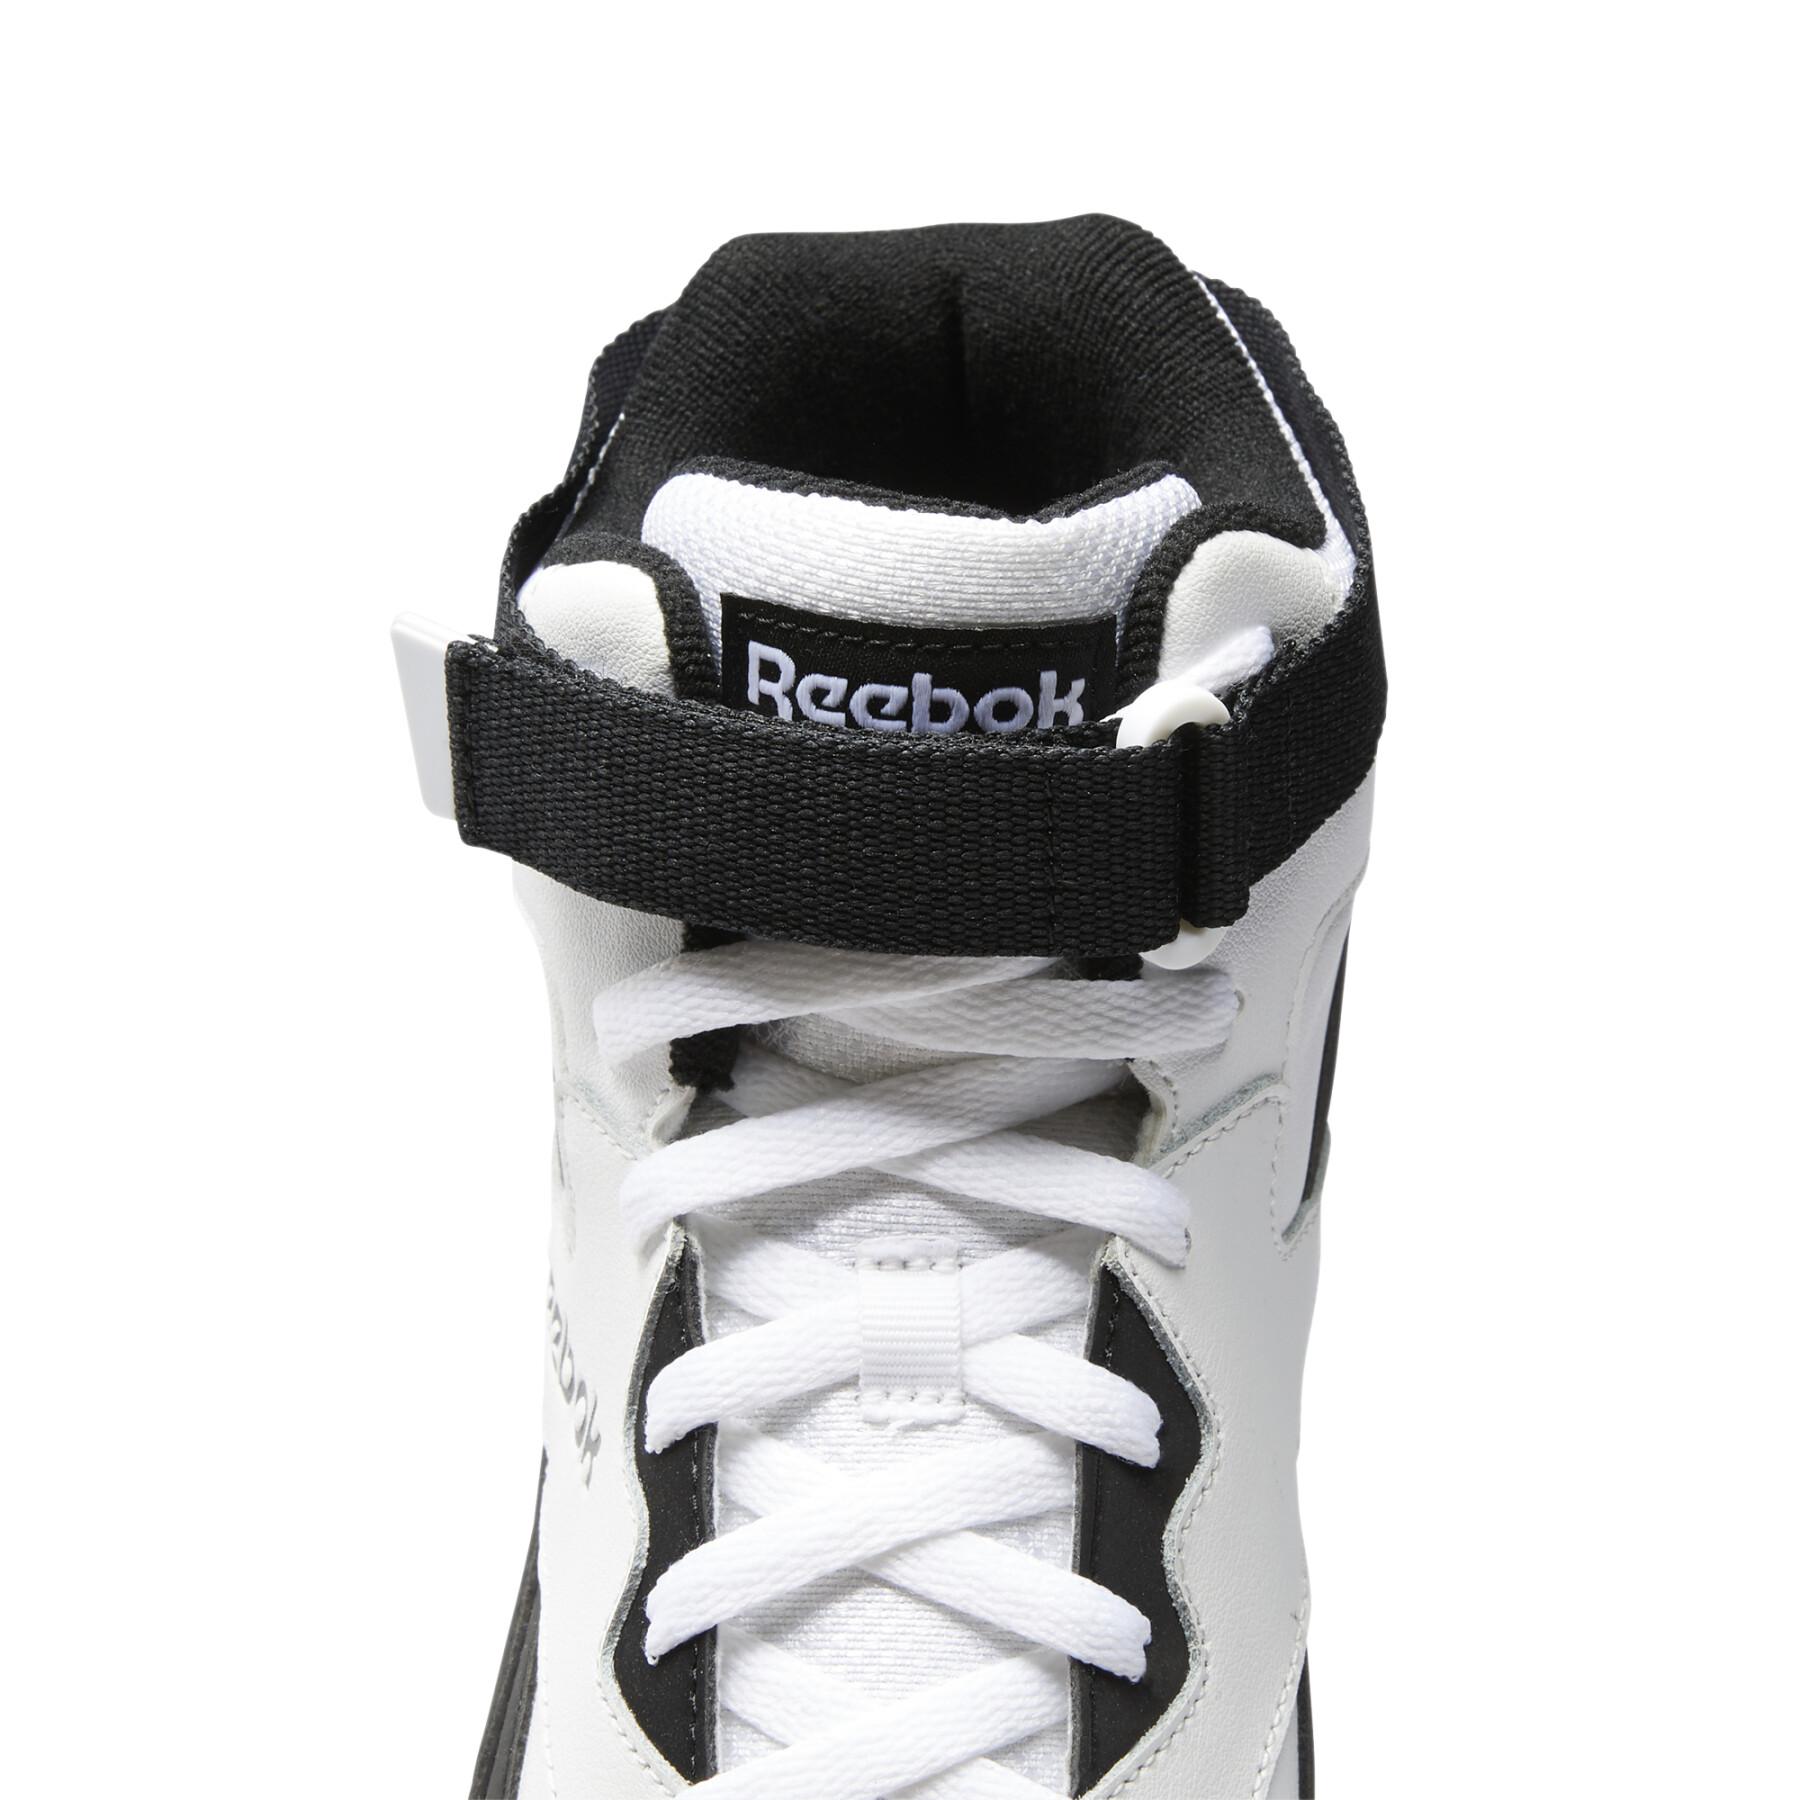 Schuhe Reebok Royal BB4500 Hi-Strap